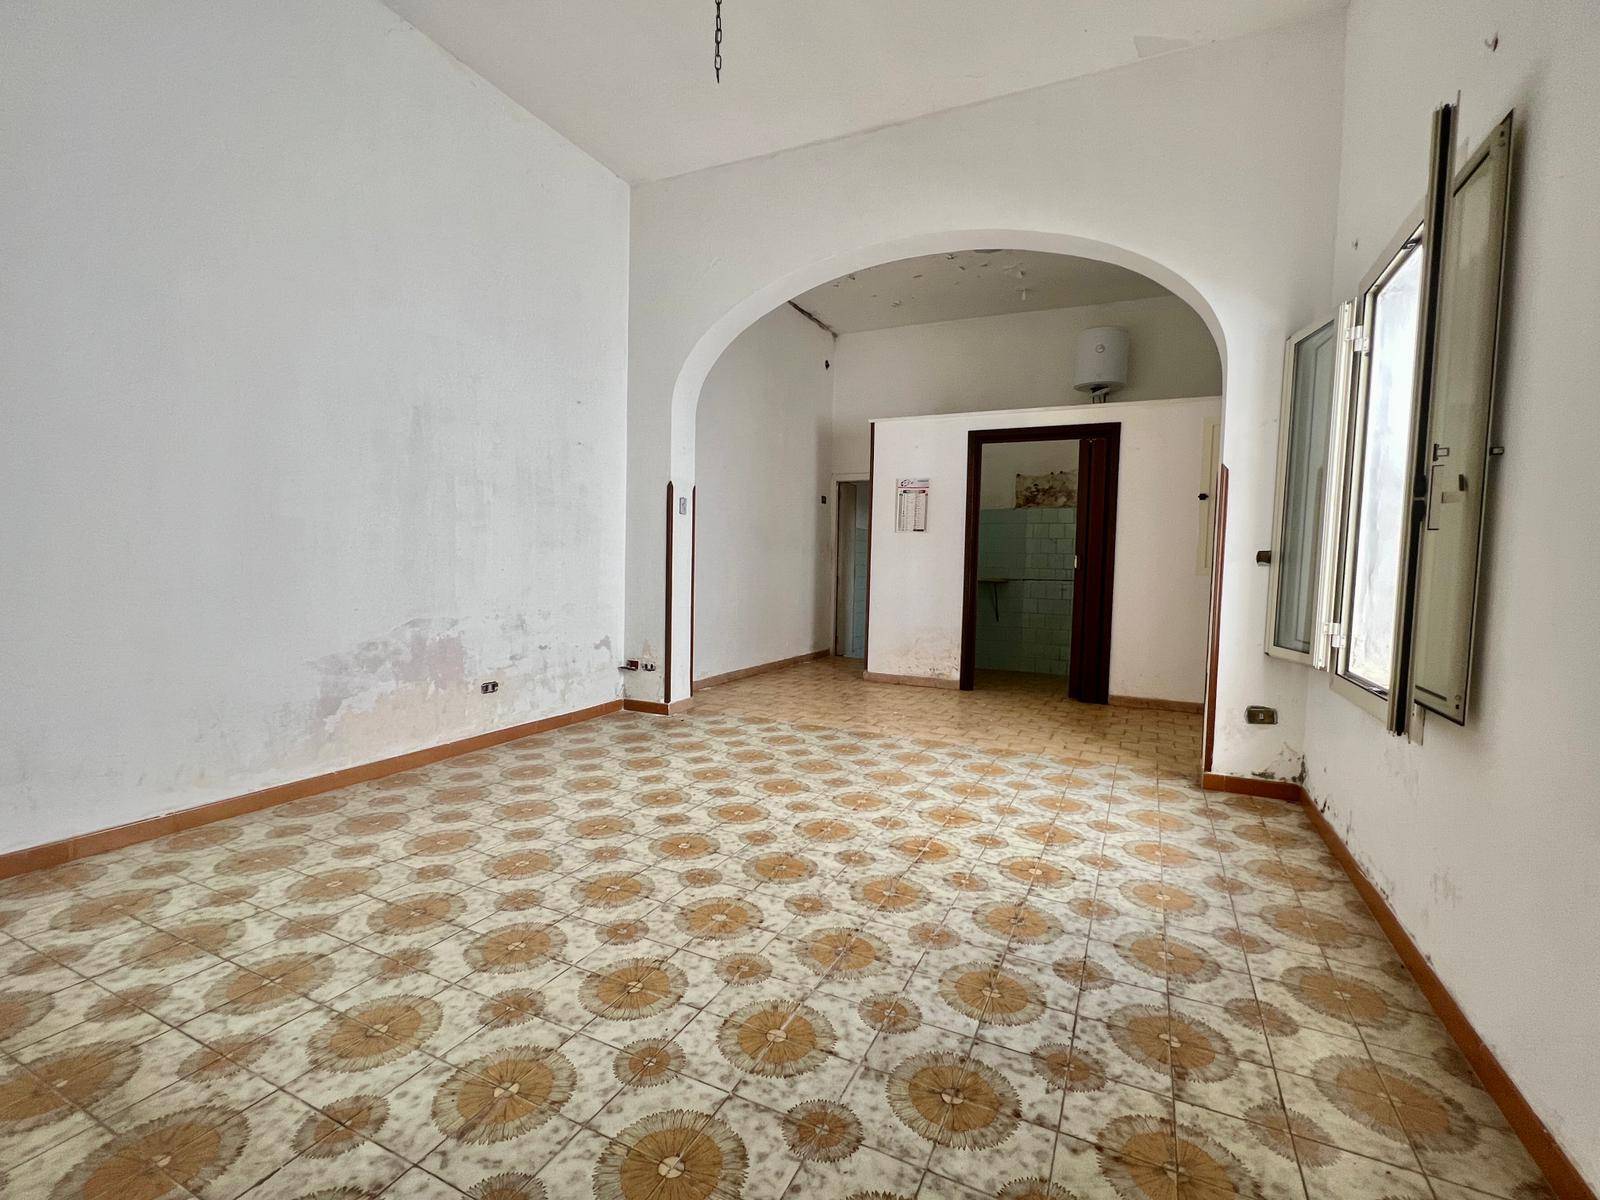 Appartamento in vendita a Lecce, 4 locali, prezzo € 85.000 | PortaleAgenzieImmobiliari.it